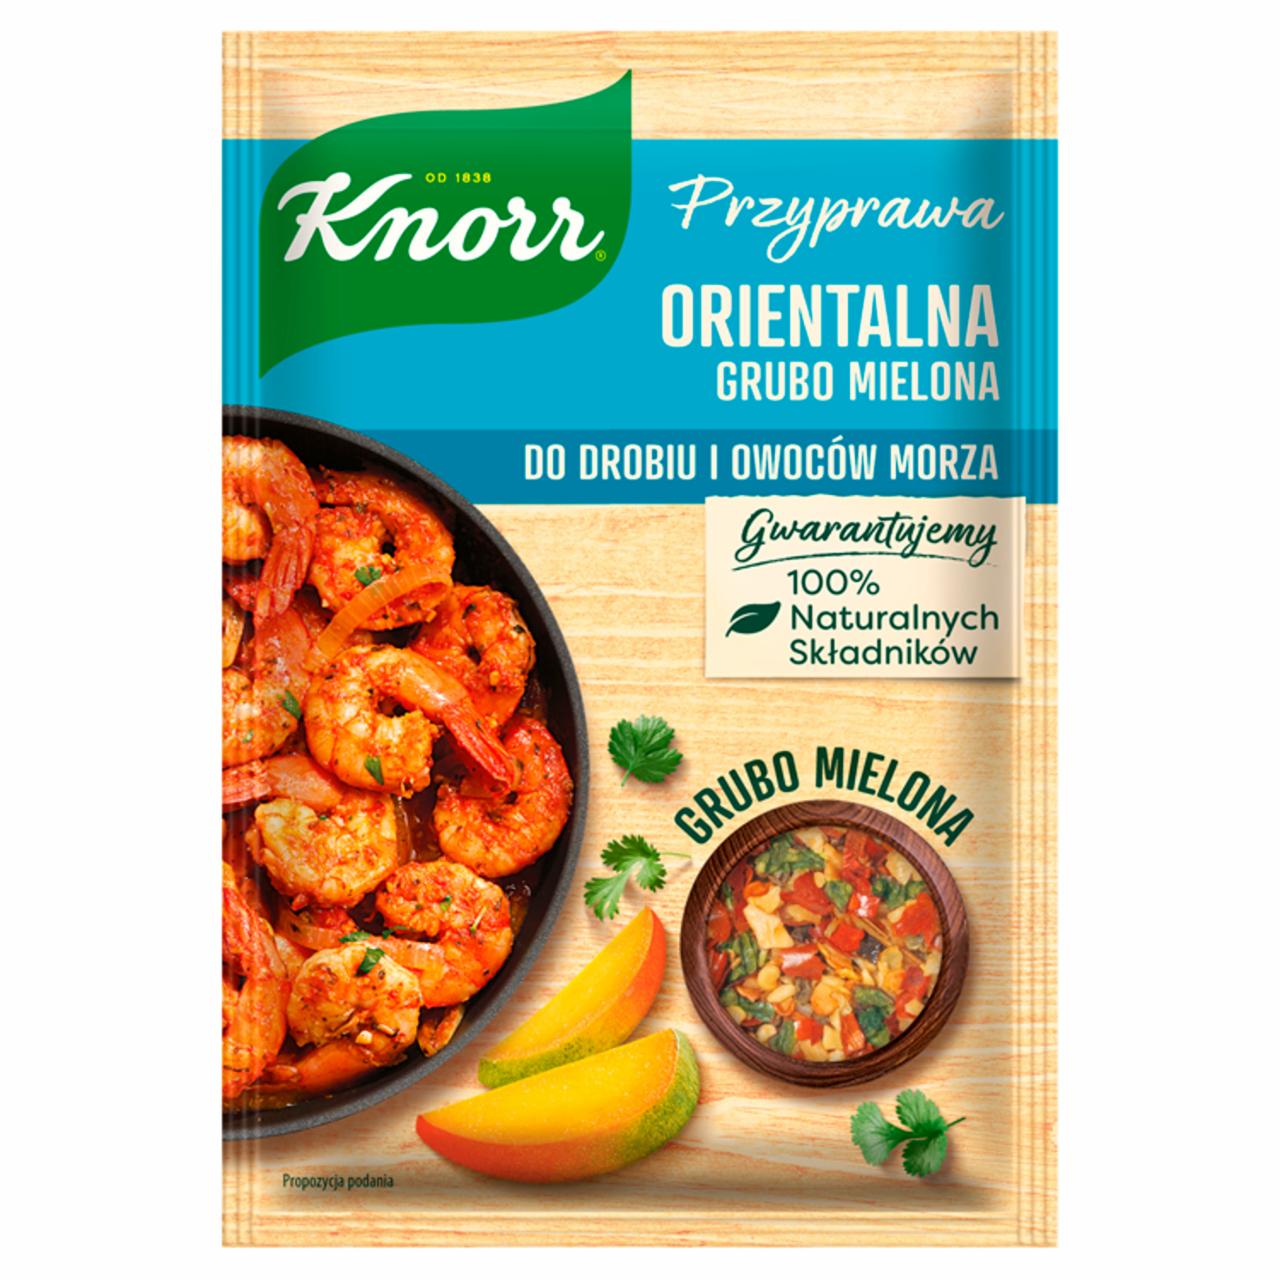 Zdjęcia - Knorr Przyprawa orientalna grubo mielona 20 g